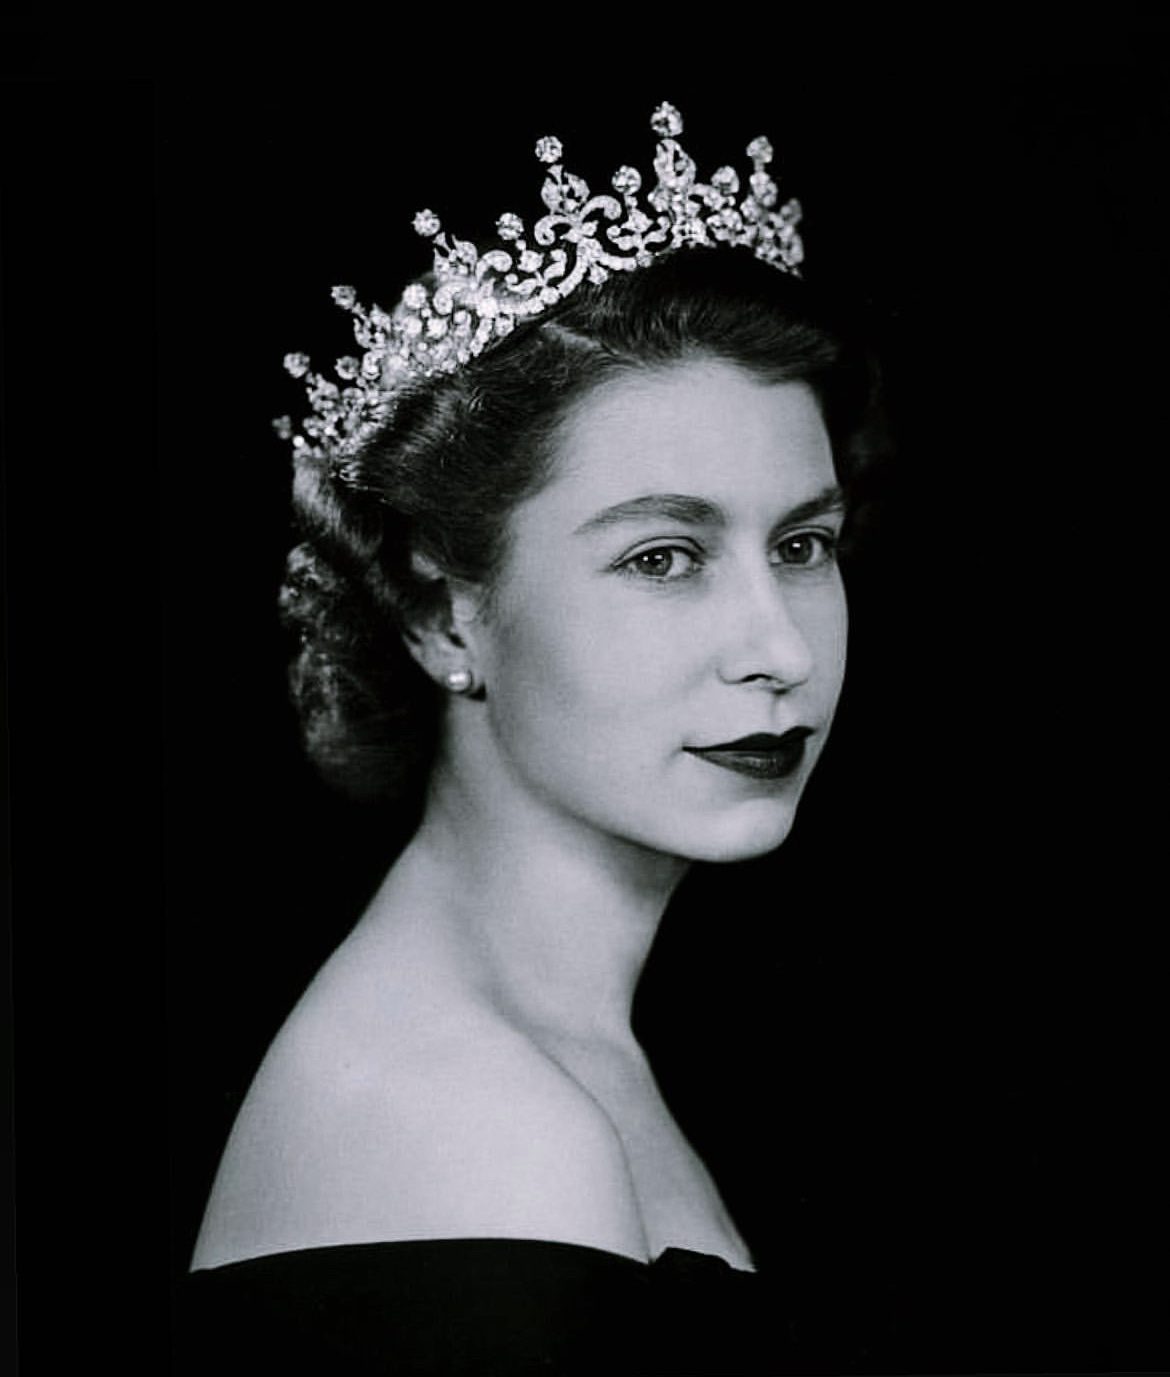 Her Majesty Queen Elizabeth II, 1926-2022